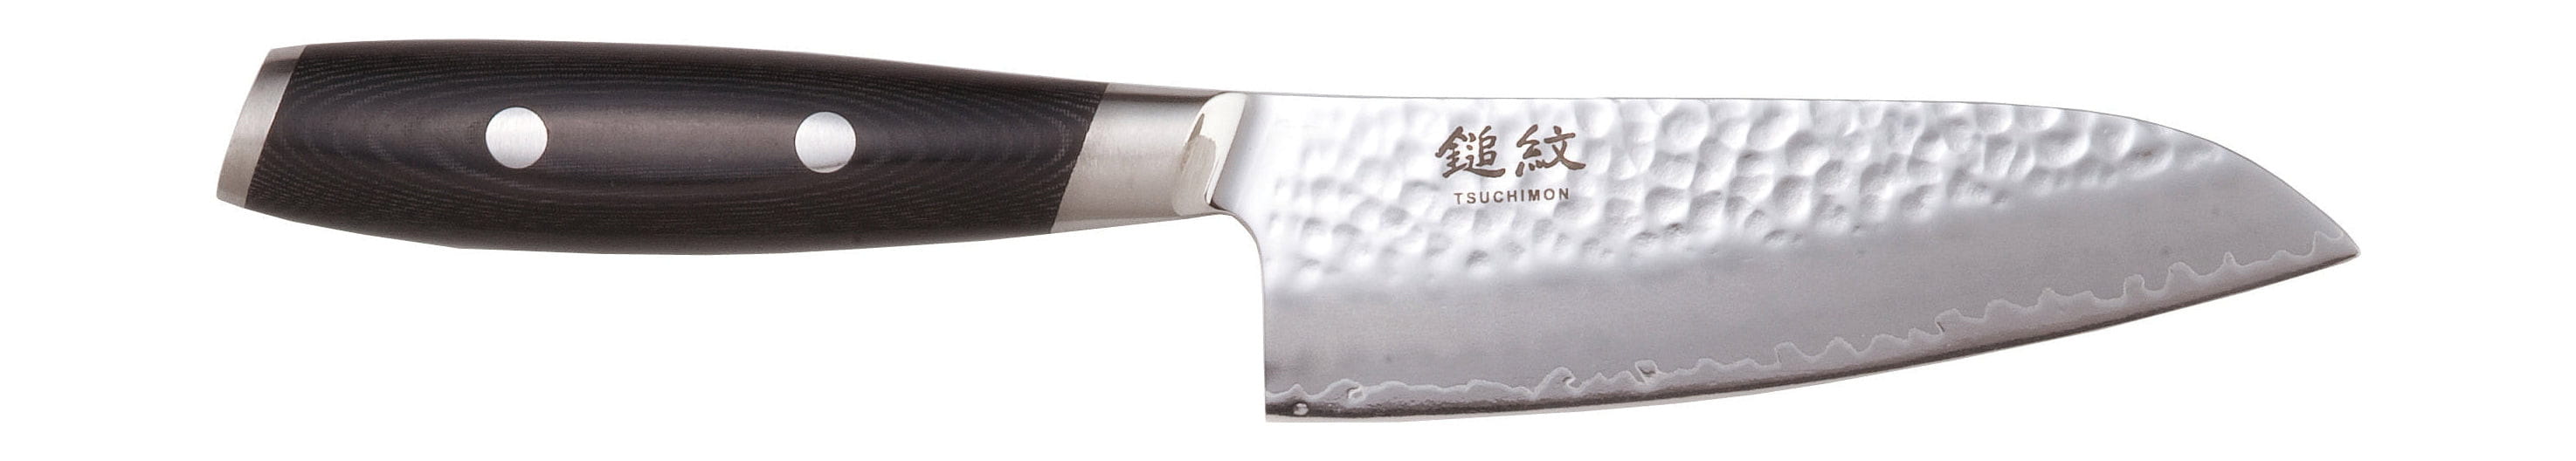 Yaxell Tsuchimon Santoku Knife, 12,5 Cm